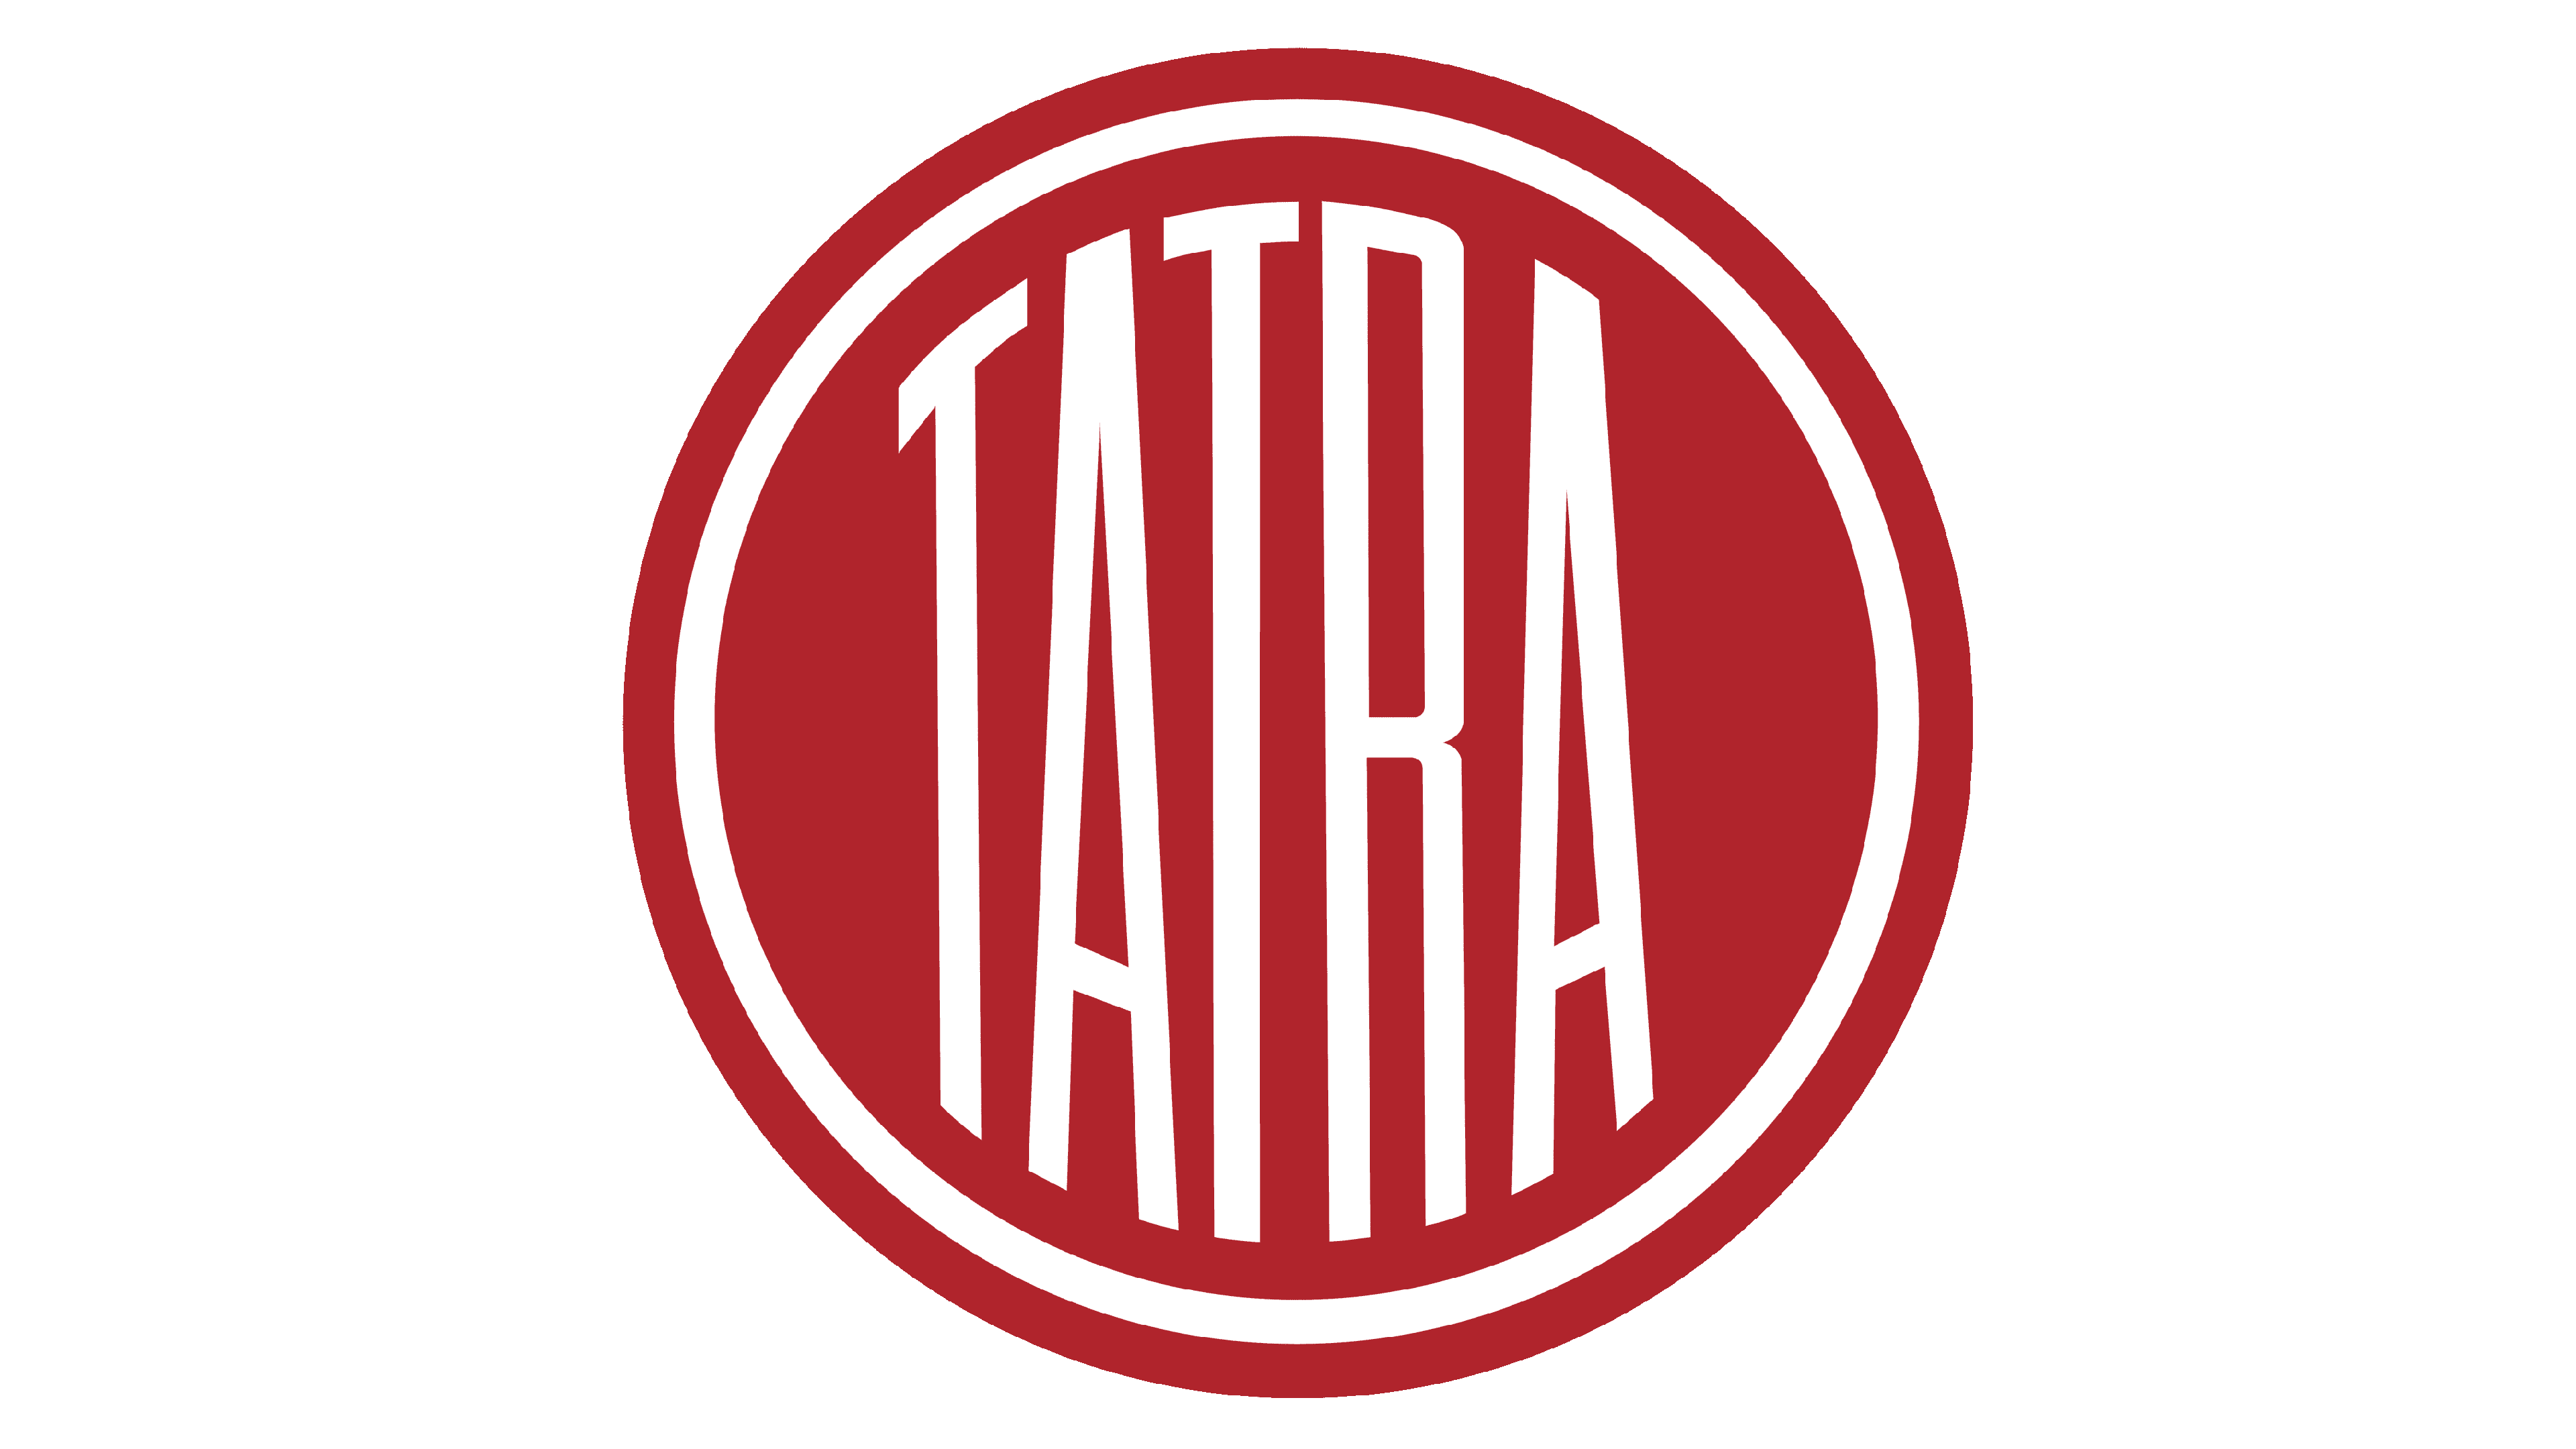 Www deal. Tatra логотип. Значок Татра. Логотип машина Татра. Tatra логотип auto.